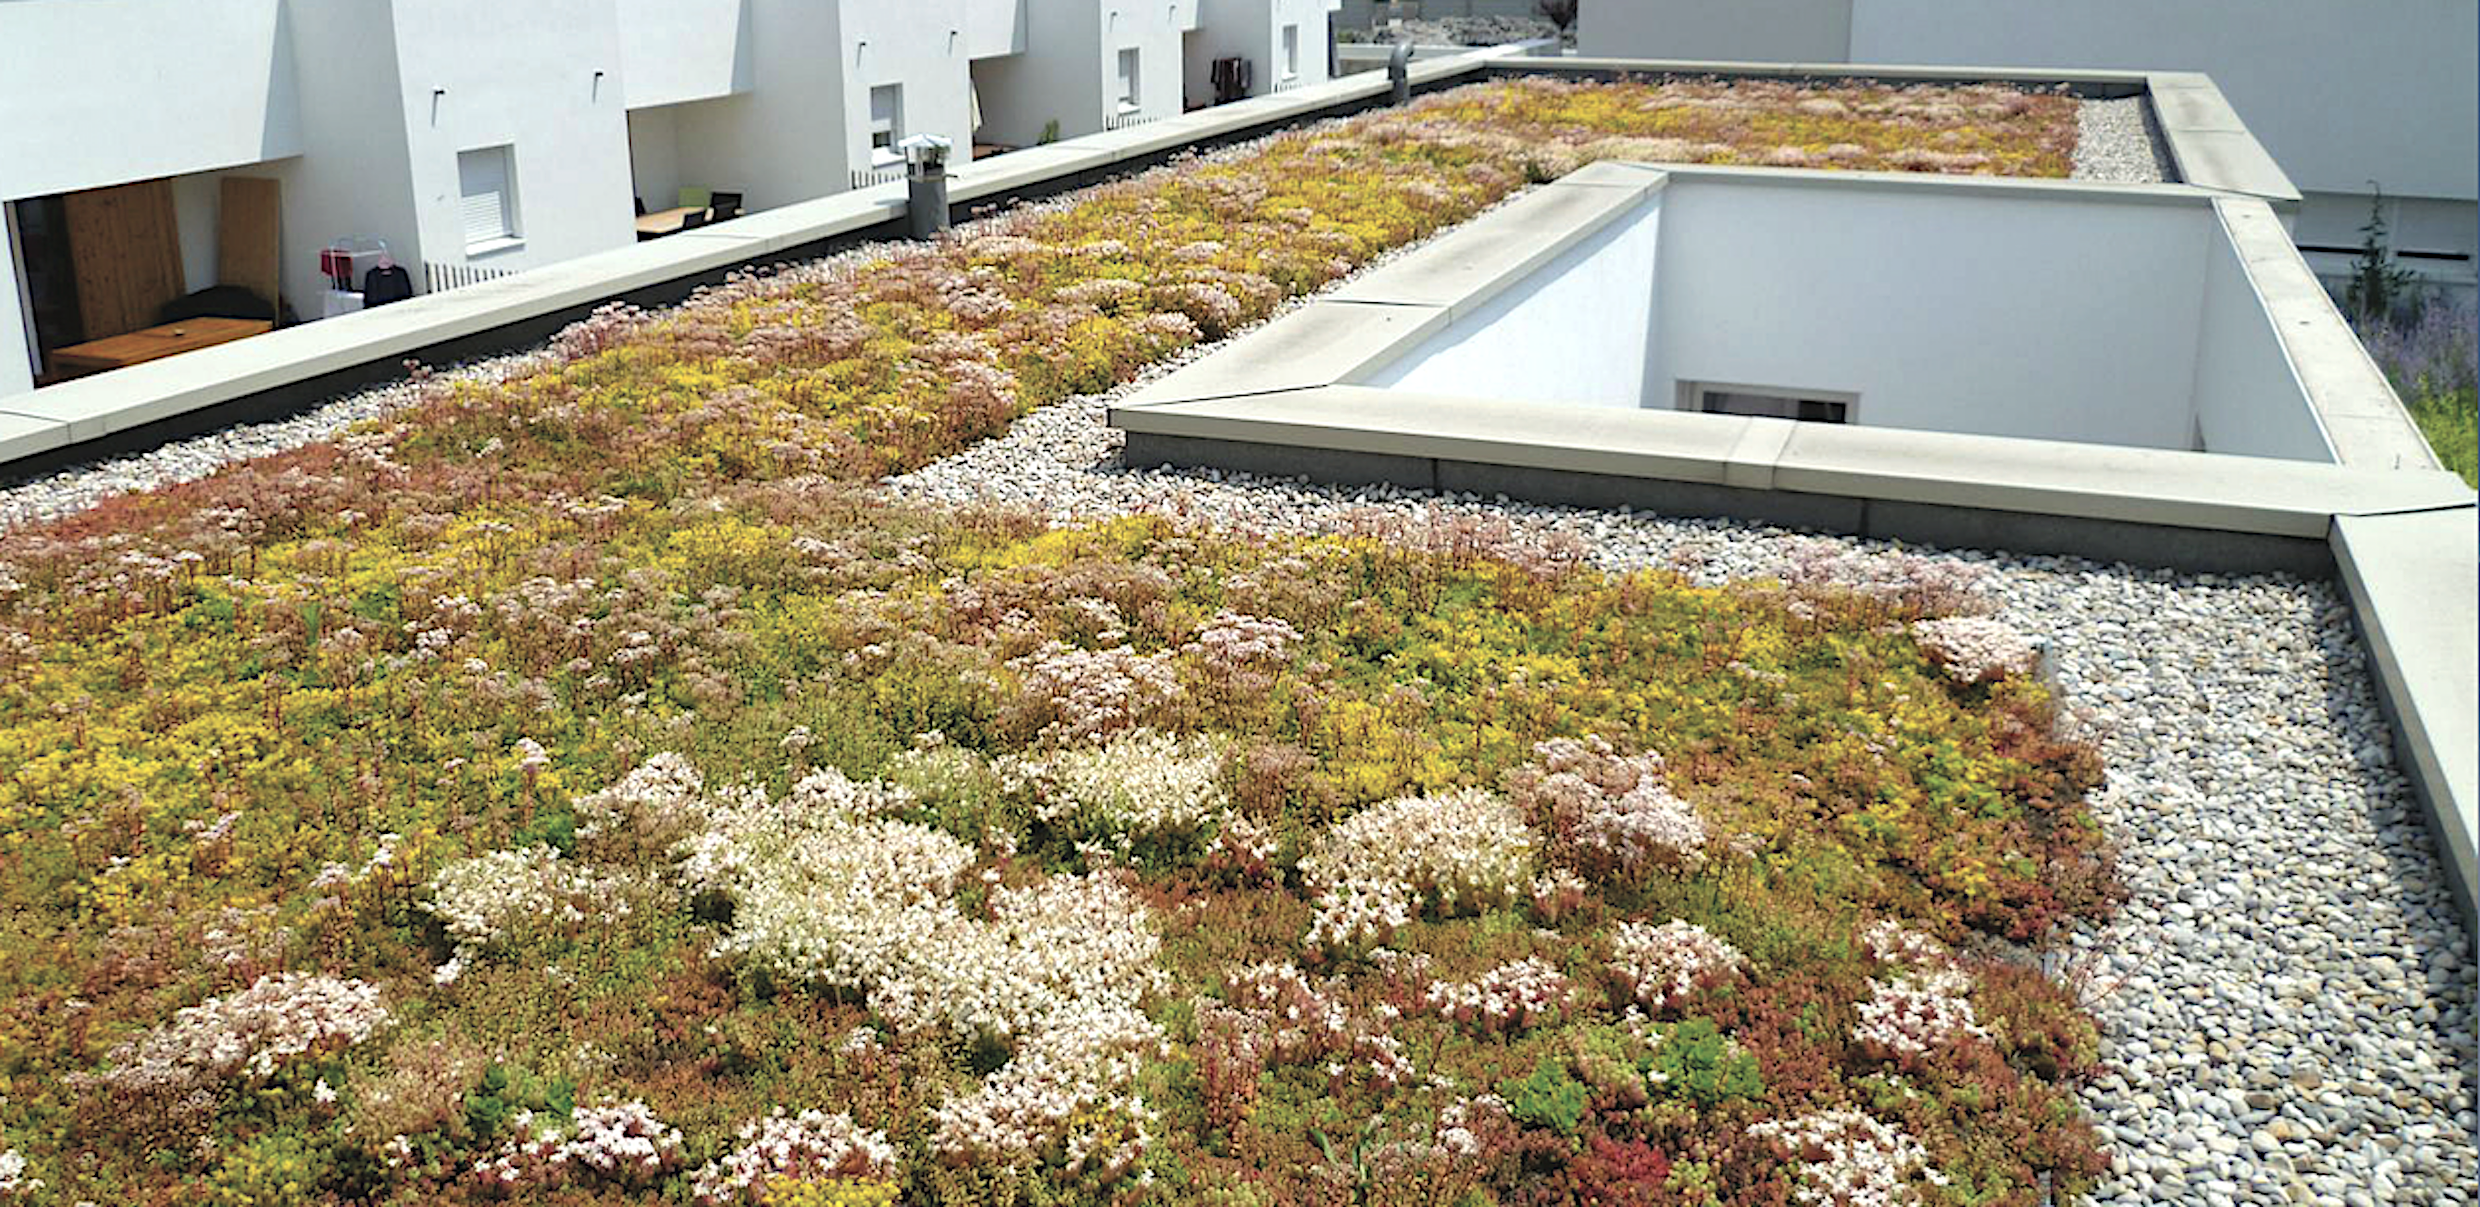 Ici, l'acrotère entoure une toiture en terrasse végétalisée. © Soprema